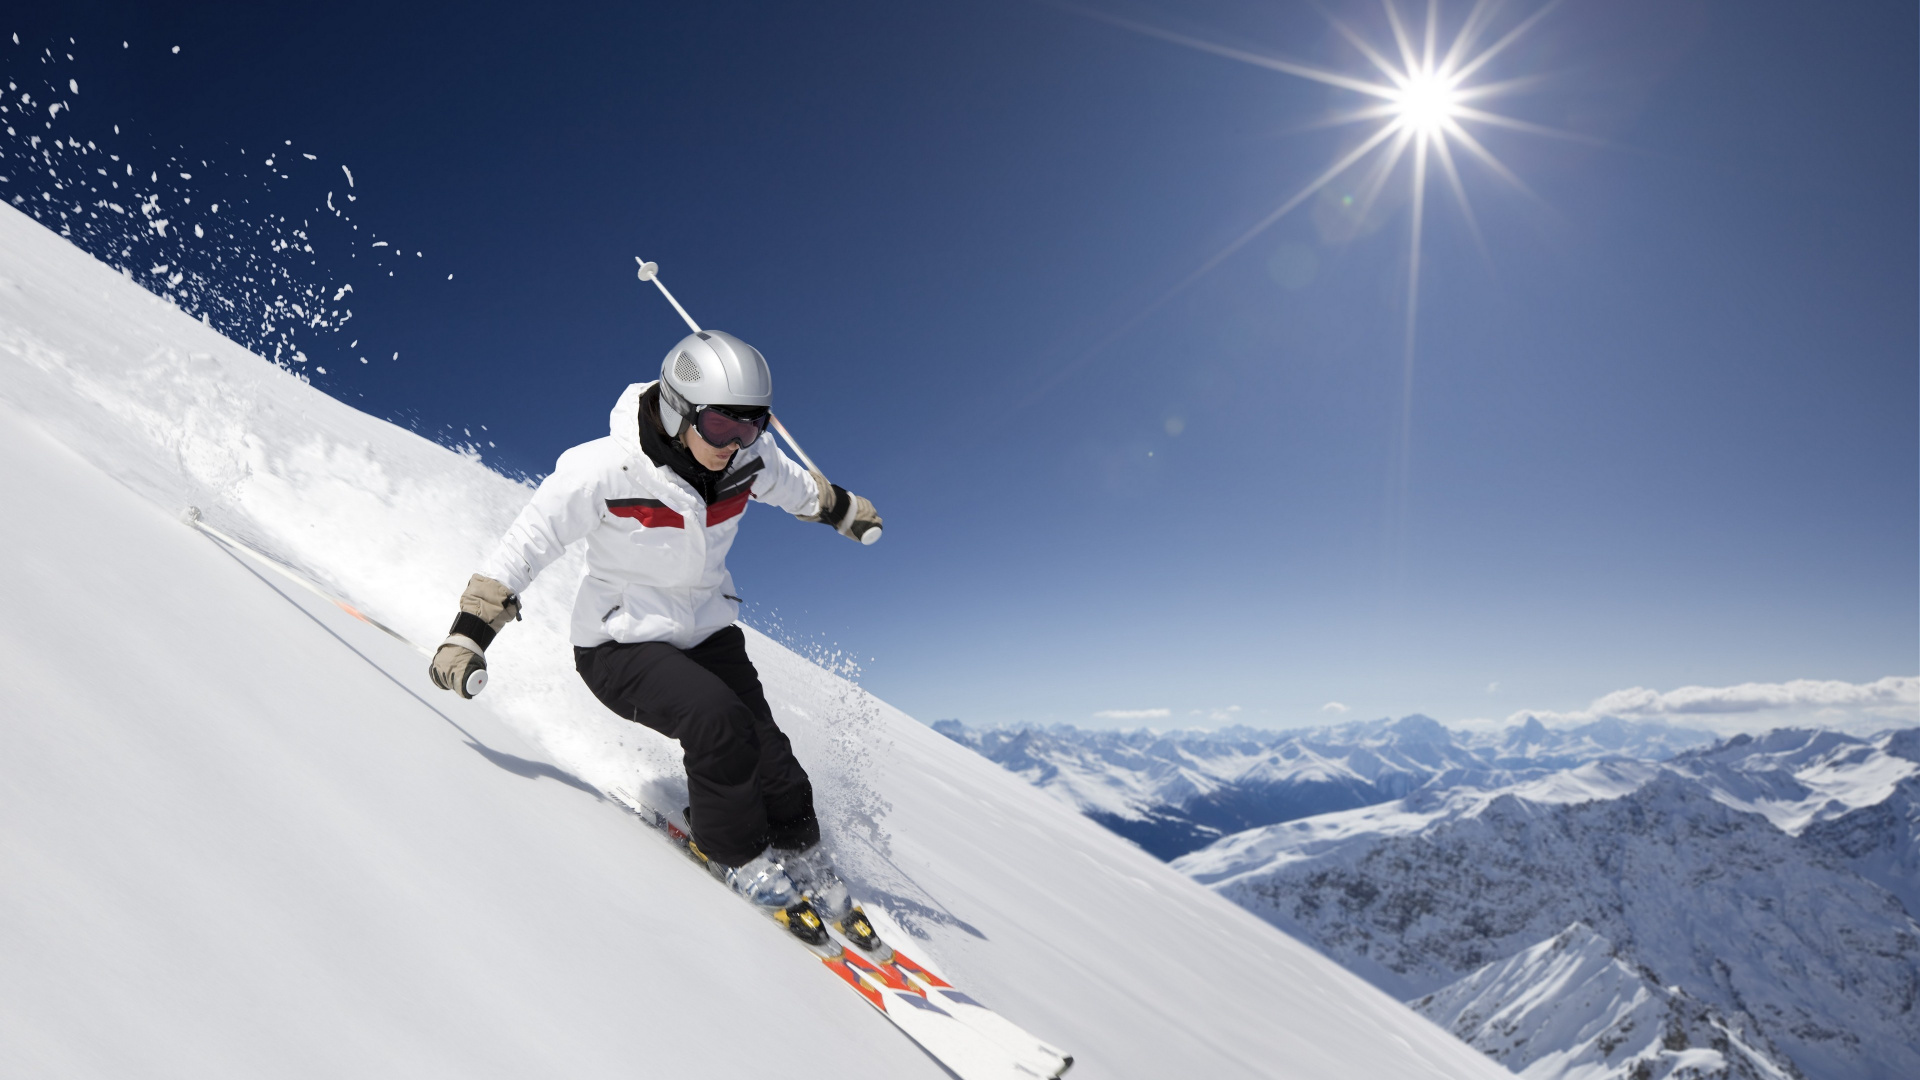 极限运动, 滑雪, 高山滑雪, 滑雪的交叉, Boardsport 壁纸 1920x1080 允许